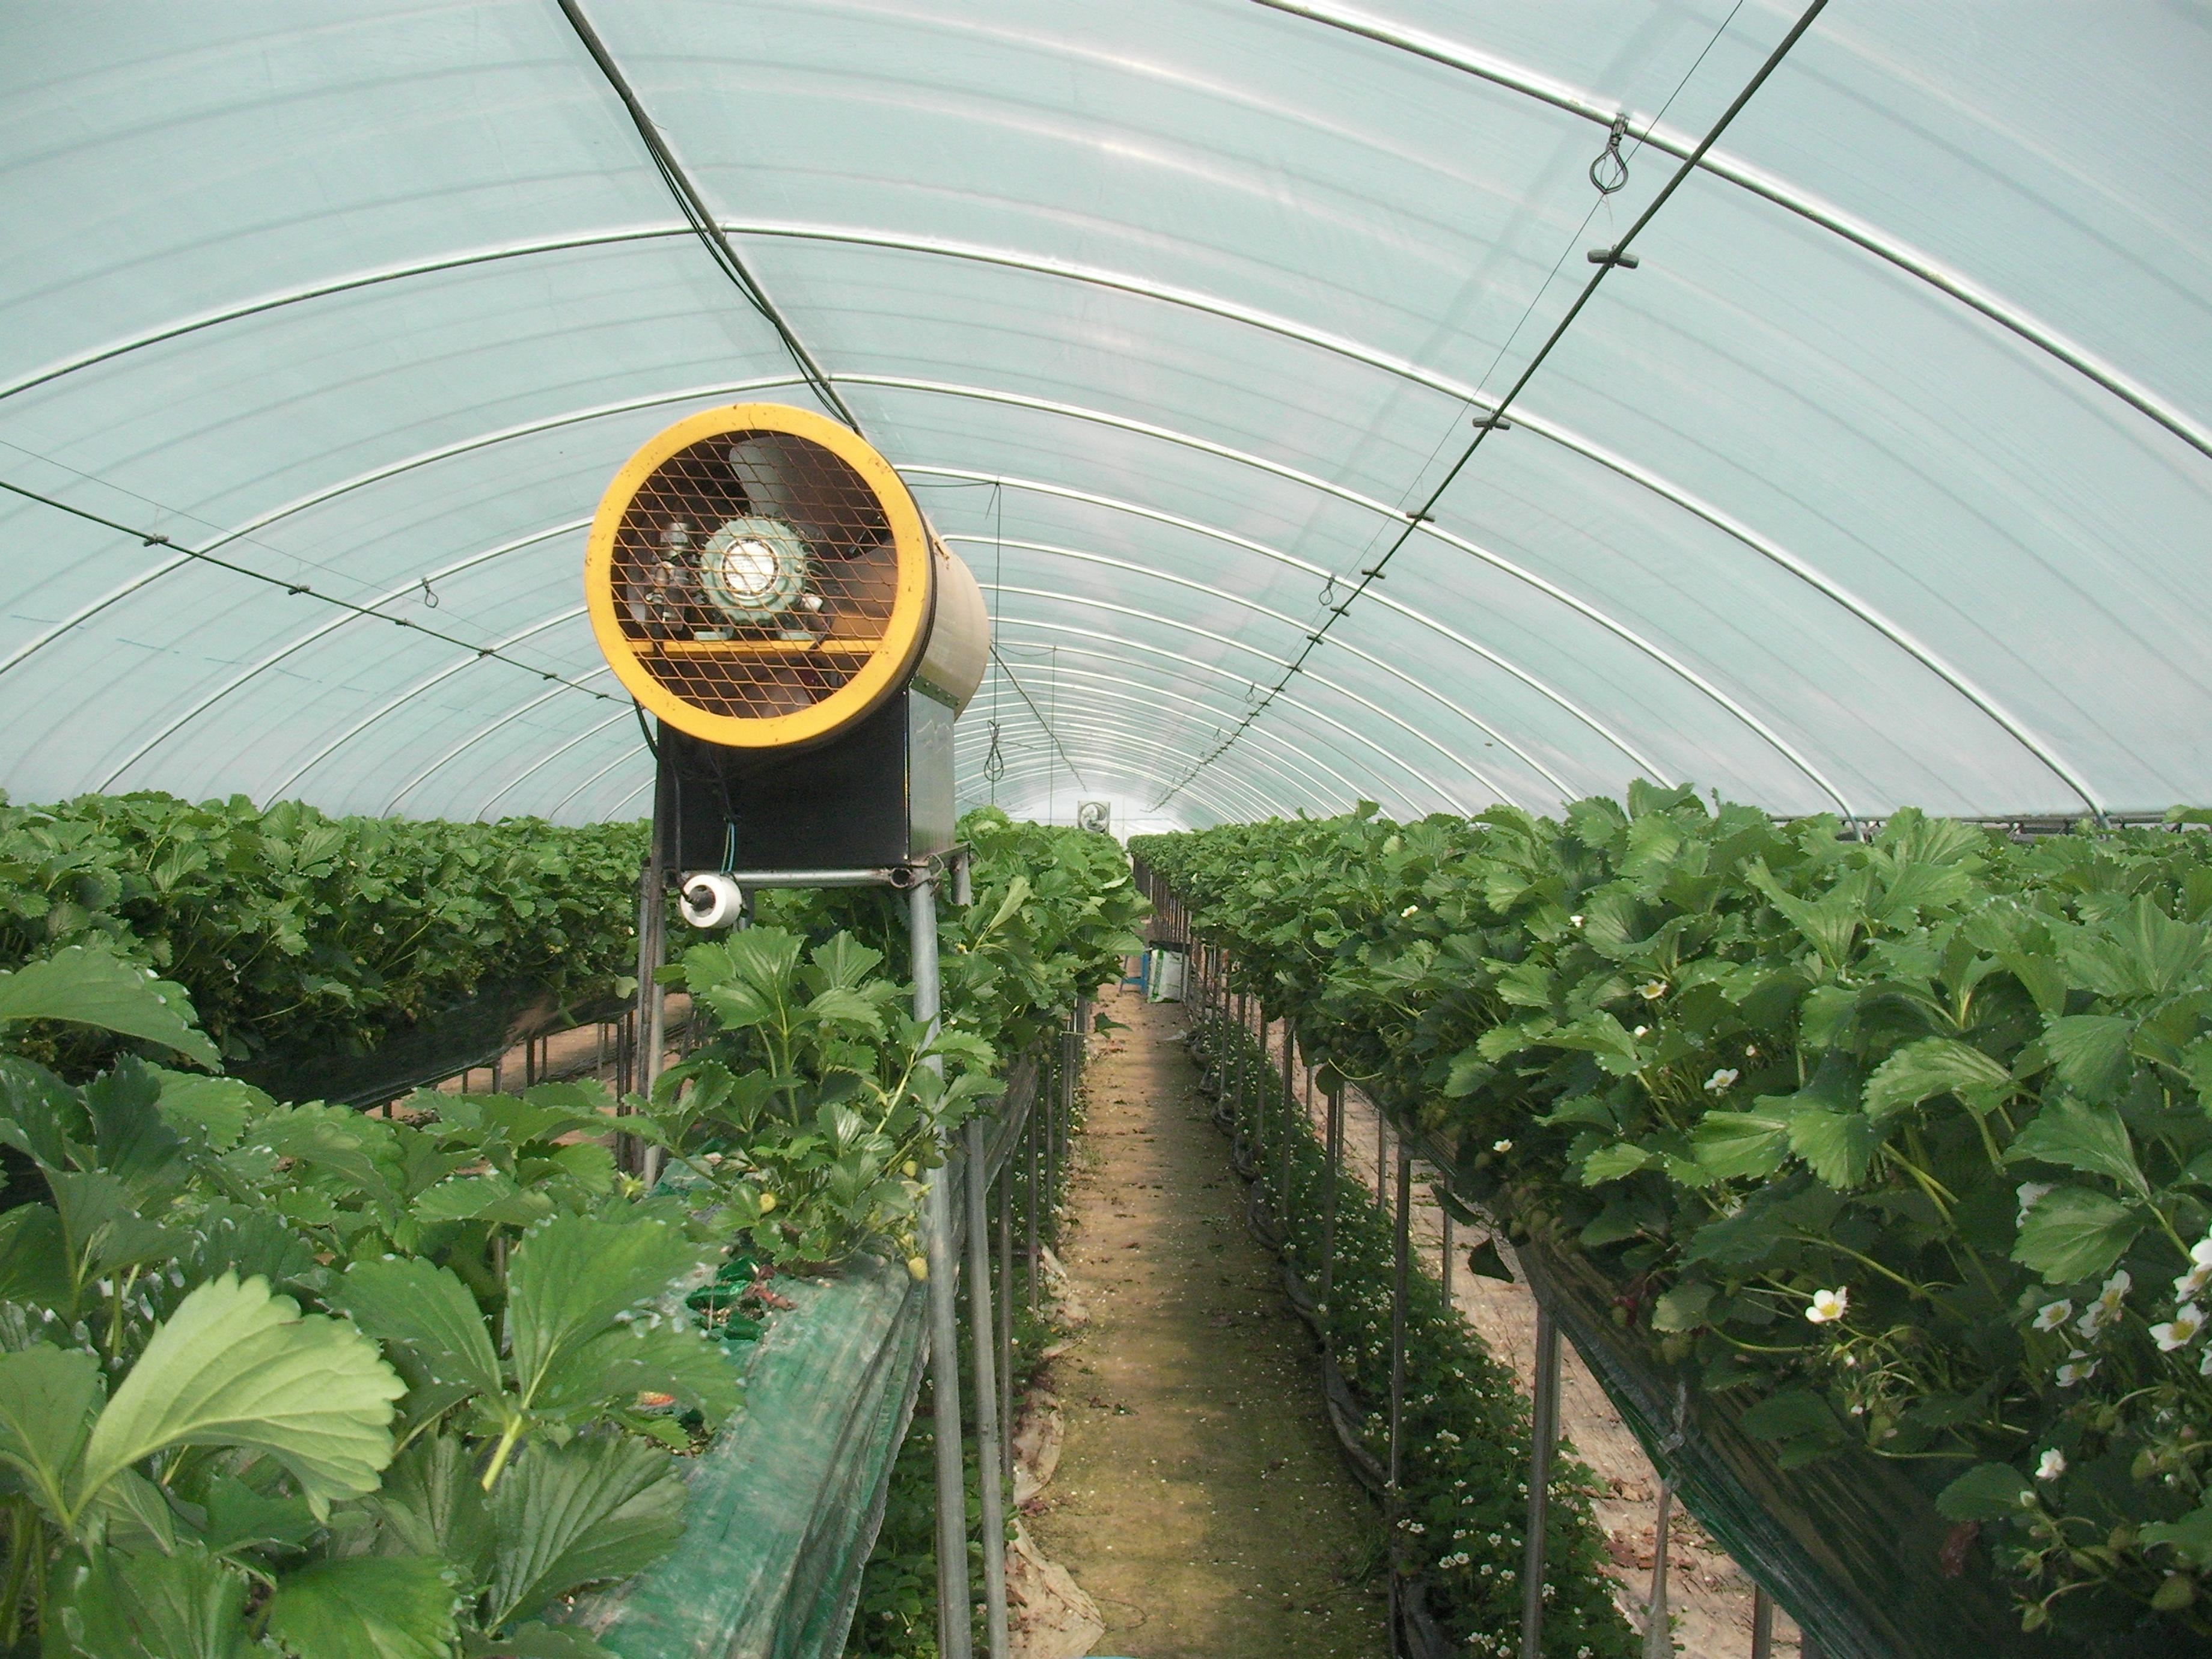 Выращивание клубники в теплице: агротехника выращивания клубники круглый год, оснащение теплицы, подходящие сорта